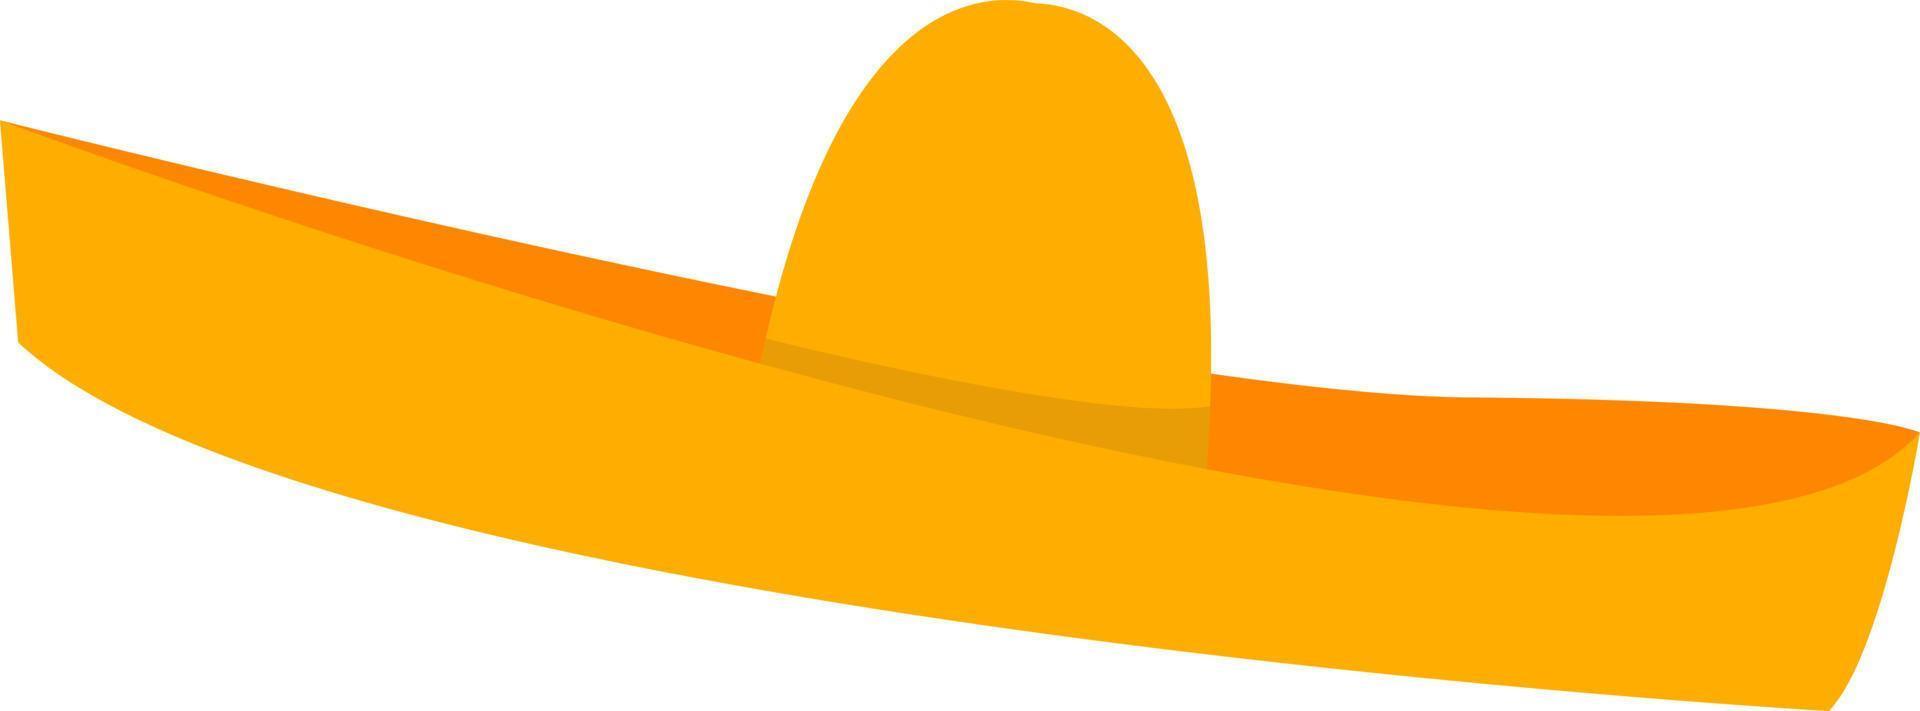 Mexikanischer Hut, Illustration, Vektor auf weißem Hintergrund.